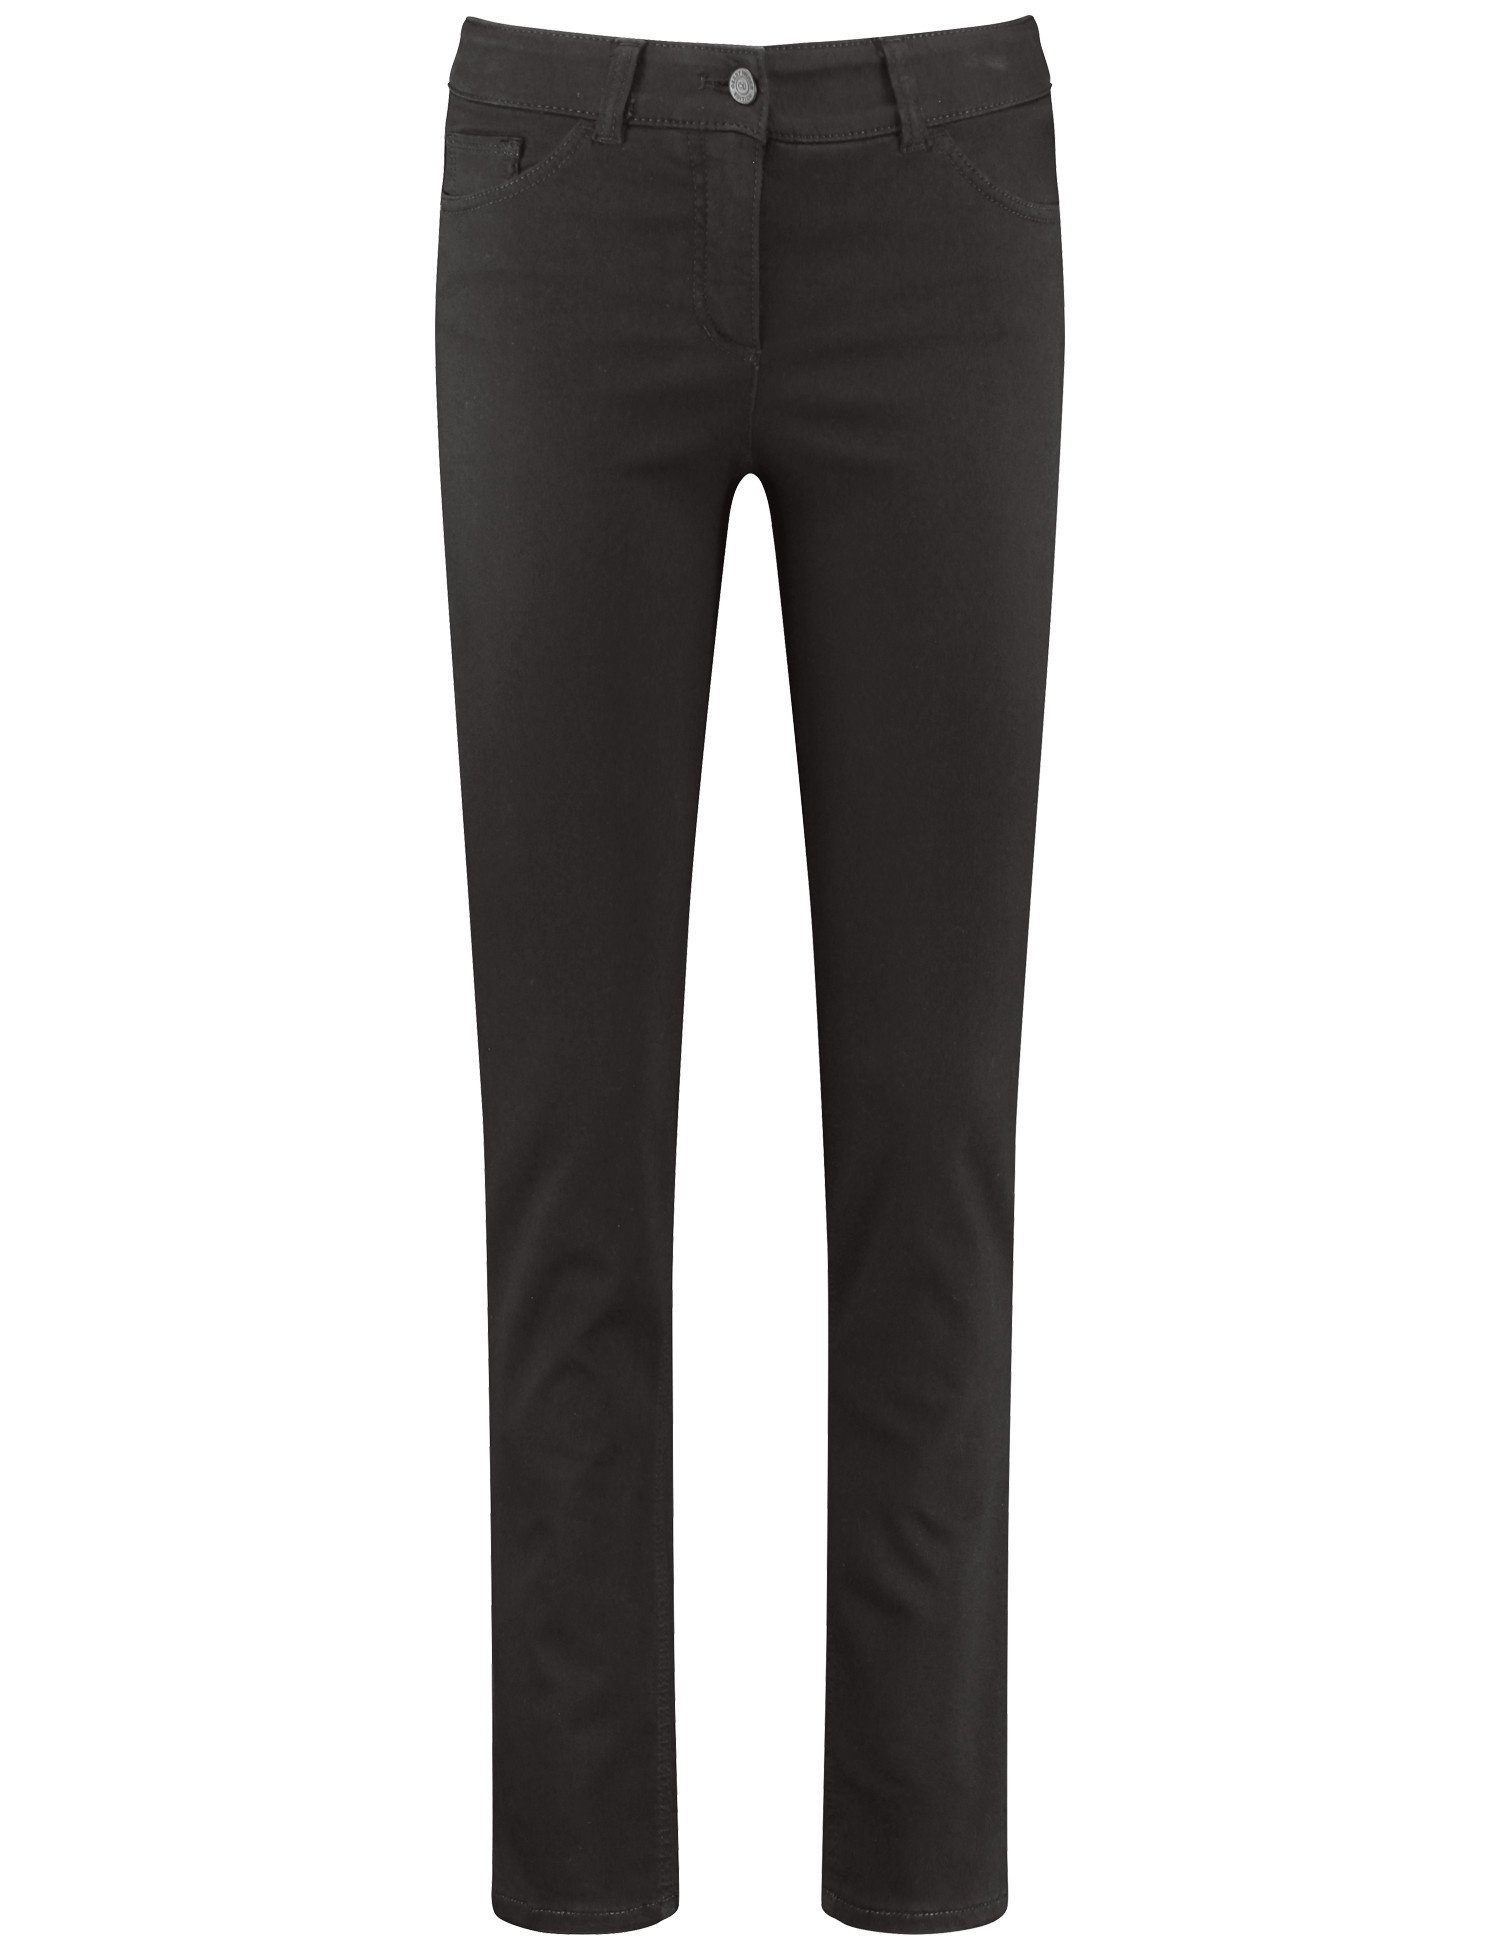 GERRY WEBER Slim-fit-Jeans Hose Jeans black black denim